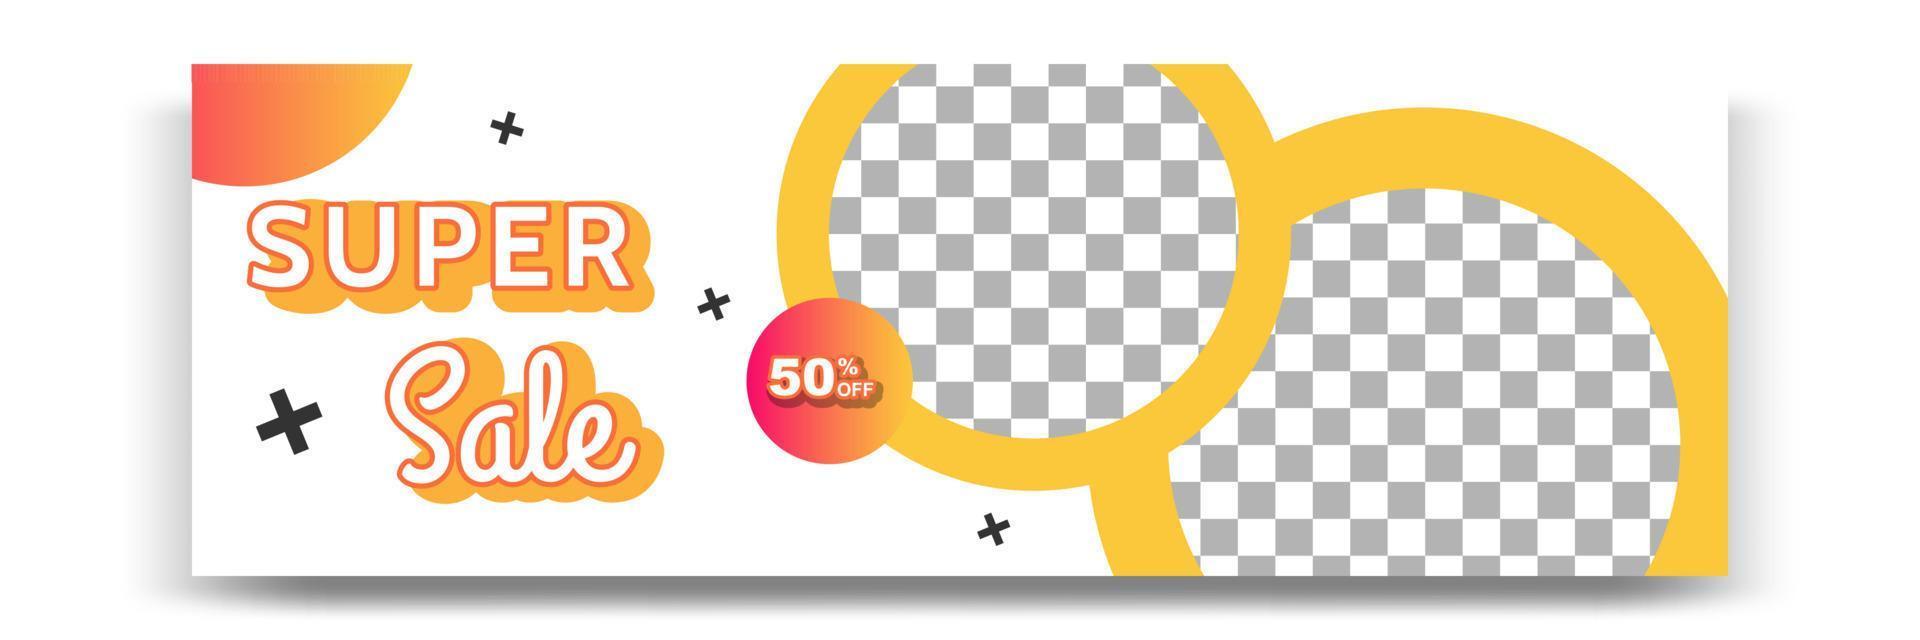 diseño de plantilla de banner geométrico moderno degradado abstracto en color amarillo, naranja, blanco. adecuado para publicidad y promoción en publicaciones en medios sociales, blog, web, portada, encabezado. vector